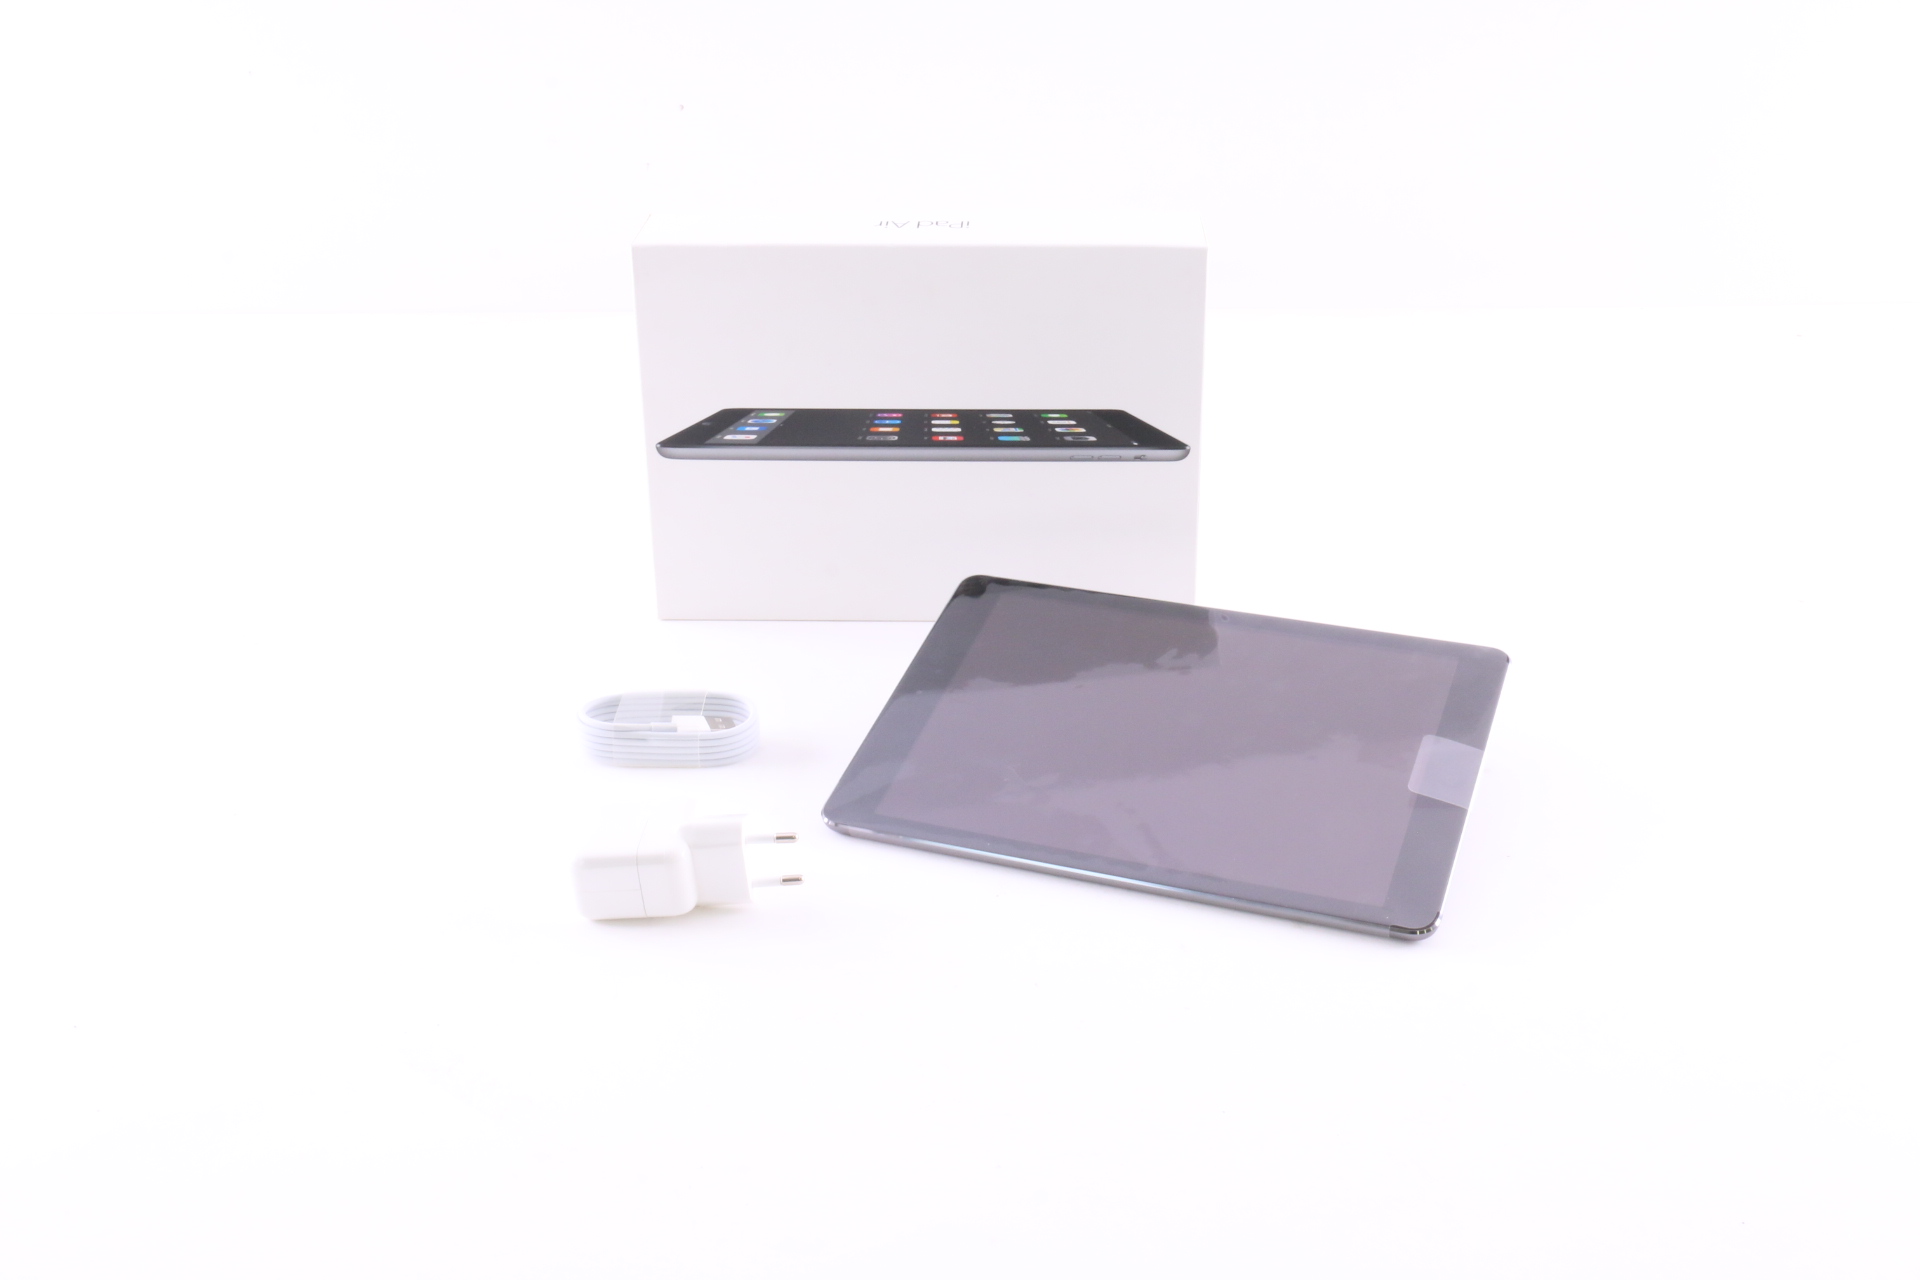 Apple iPad Air (32 GB) Space Gray (Wi-Fi)